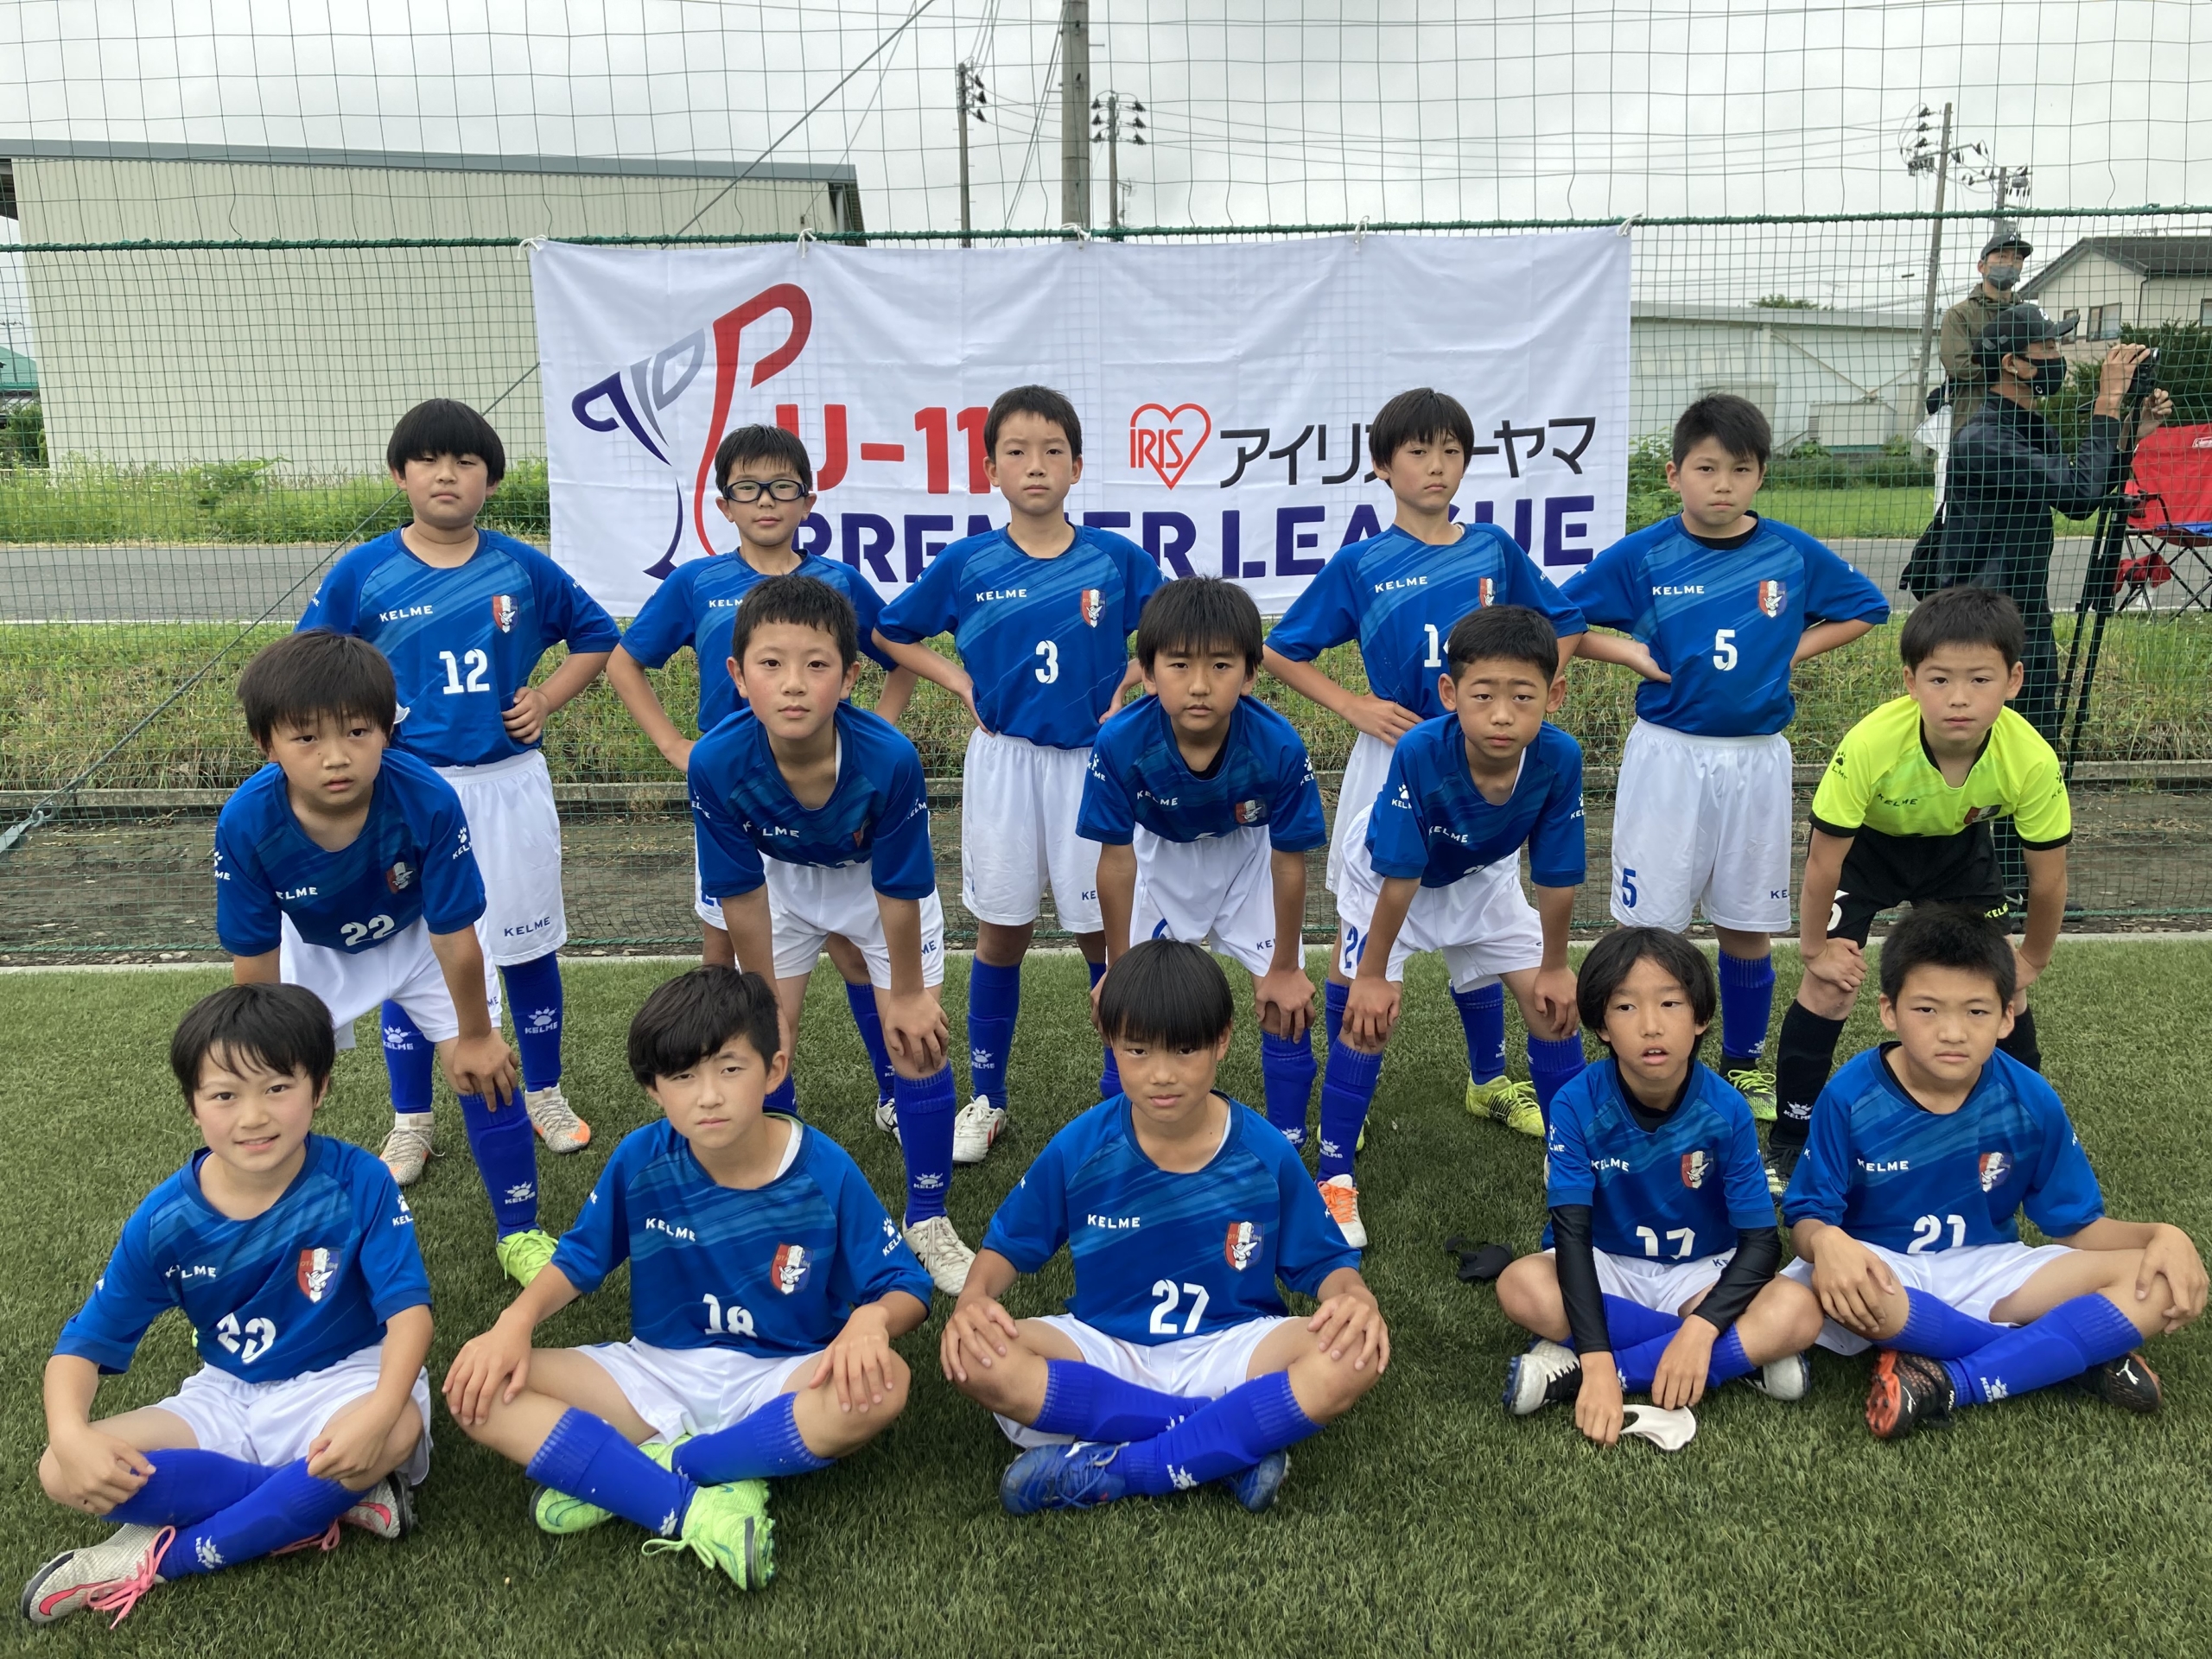 盛岡太田東サッカー少年団 Premier League U 11